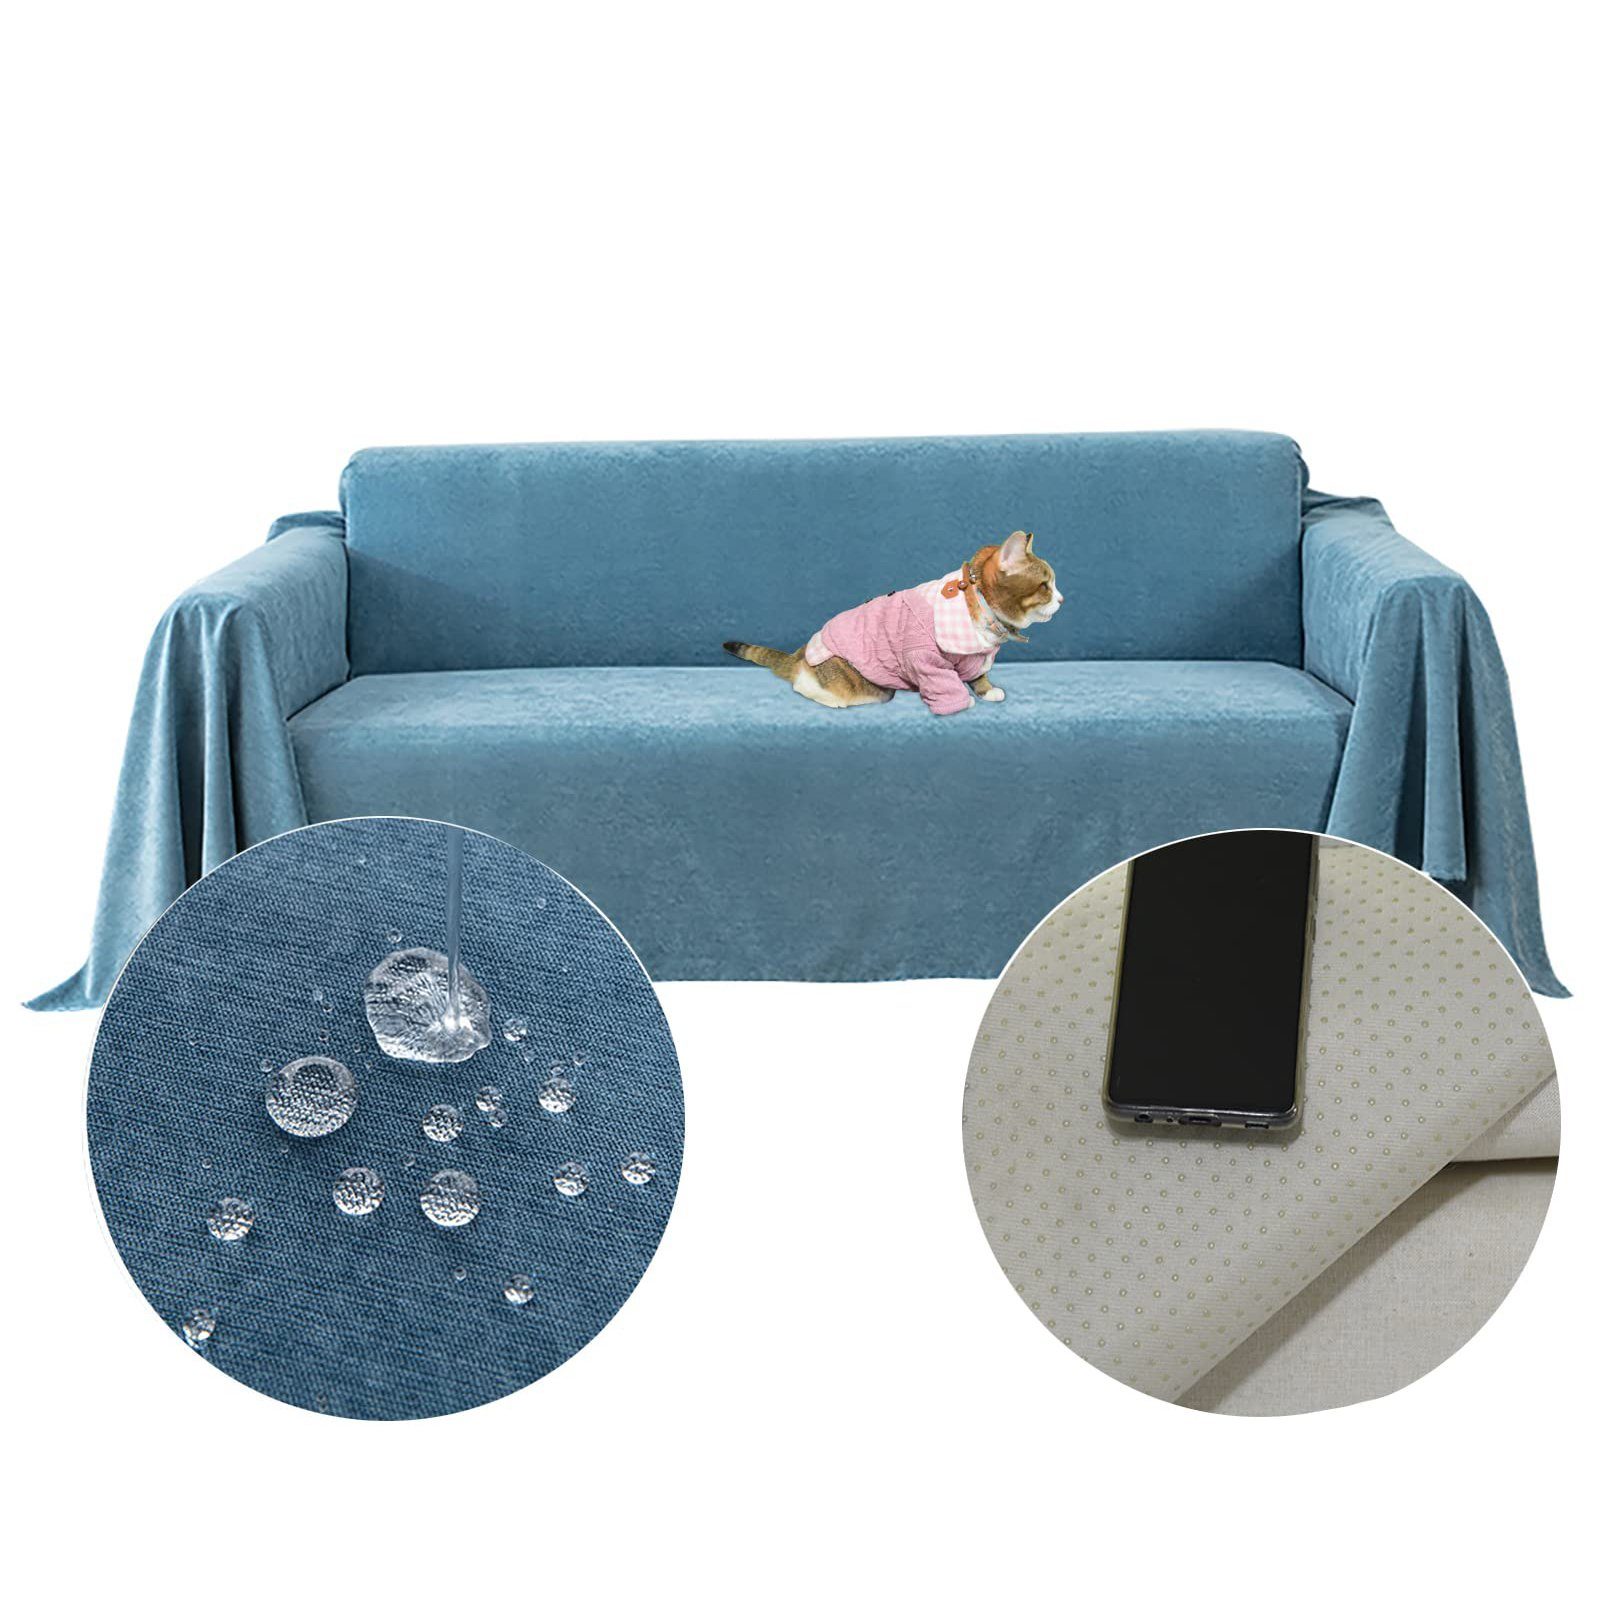 Sofaüberwürfe Couchschutz, Sofabezug rutschfest Abdeckung Blau(180*150cm) wasserabweisend Juoungle